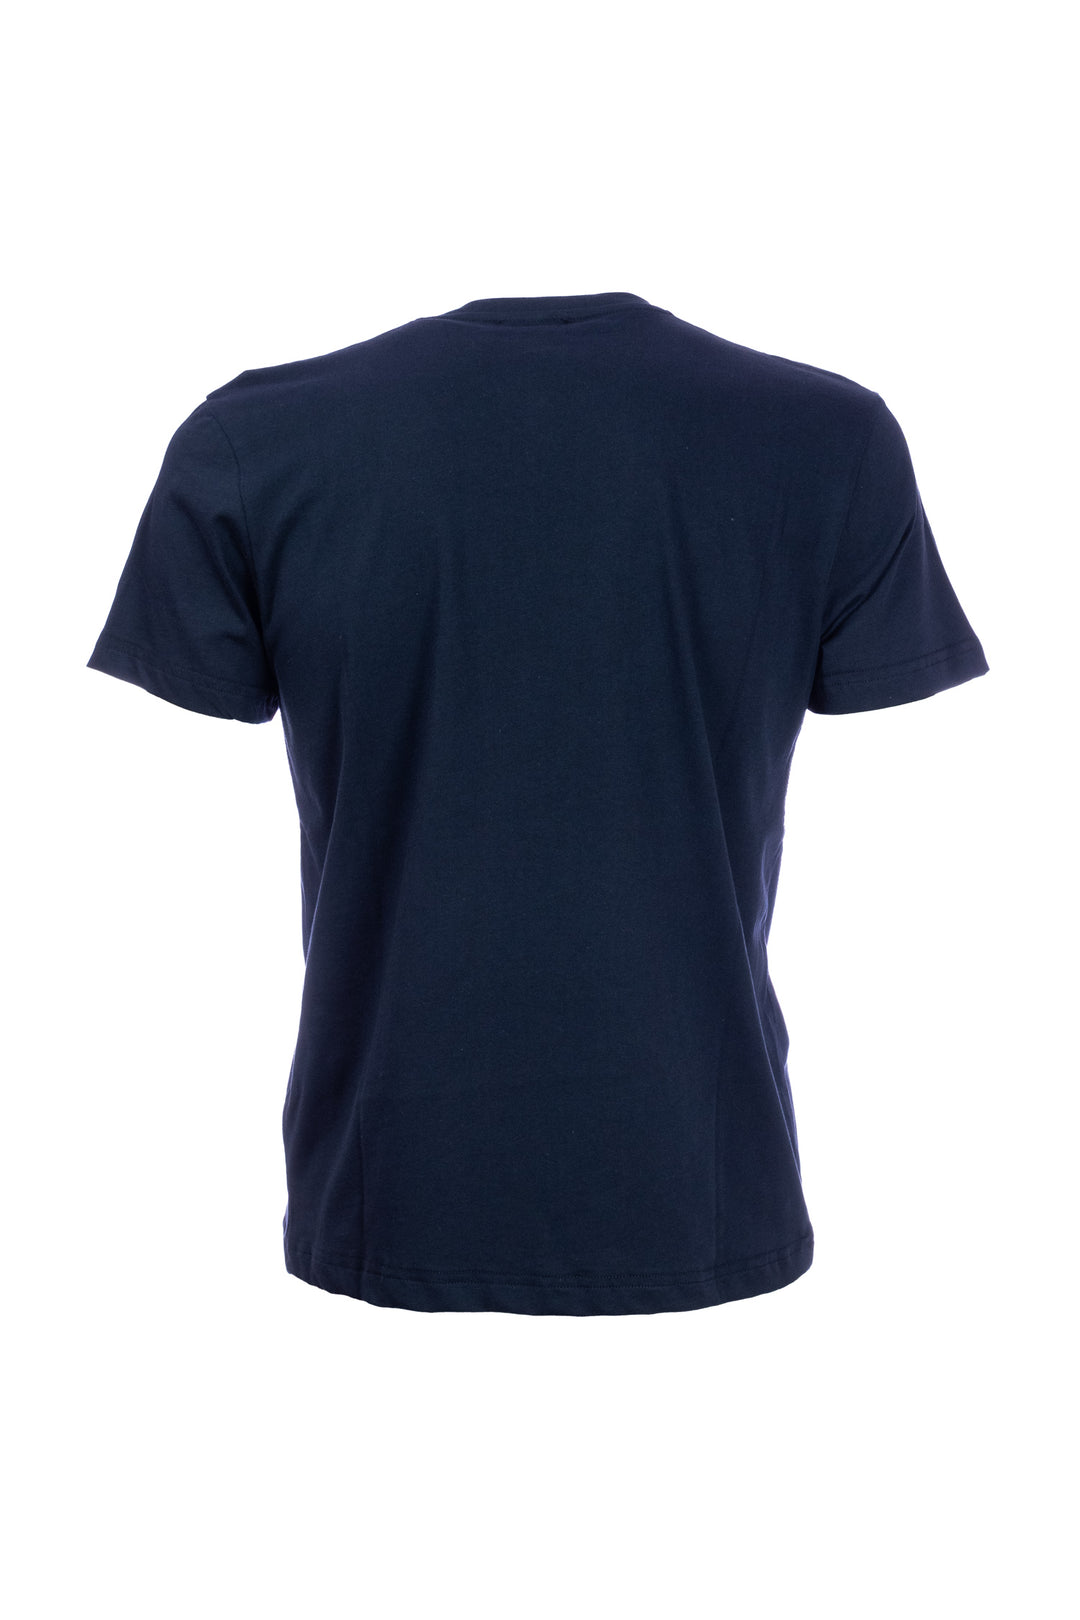 W-POSTAGE T-shirt blu scuro in cotone con taschino stampato con arance - Mancinelli 1954